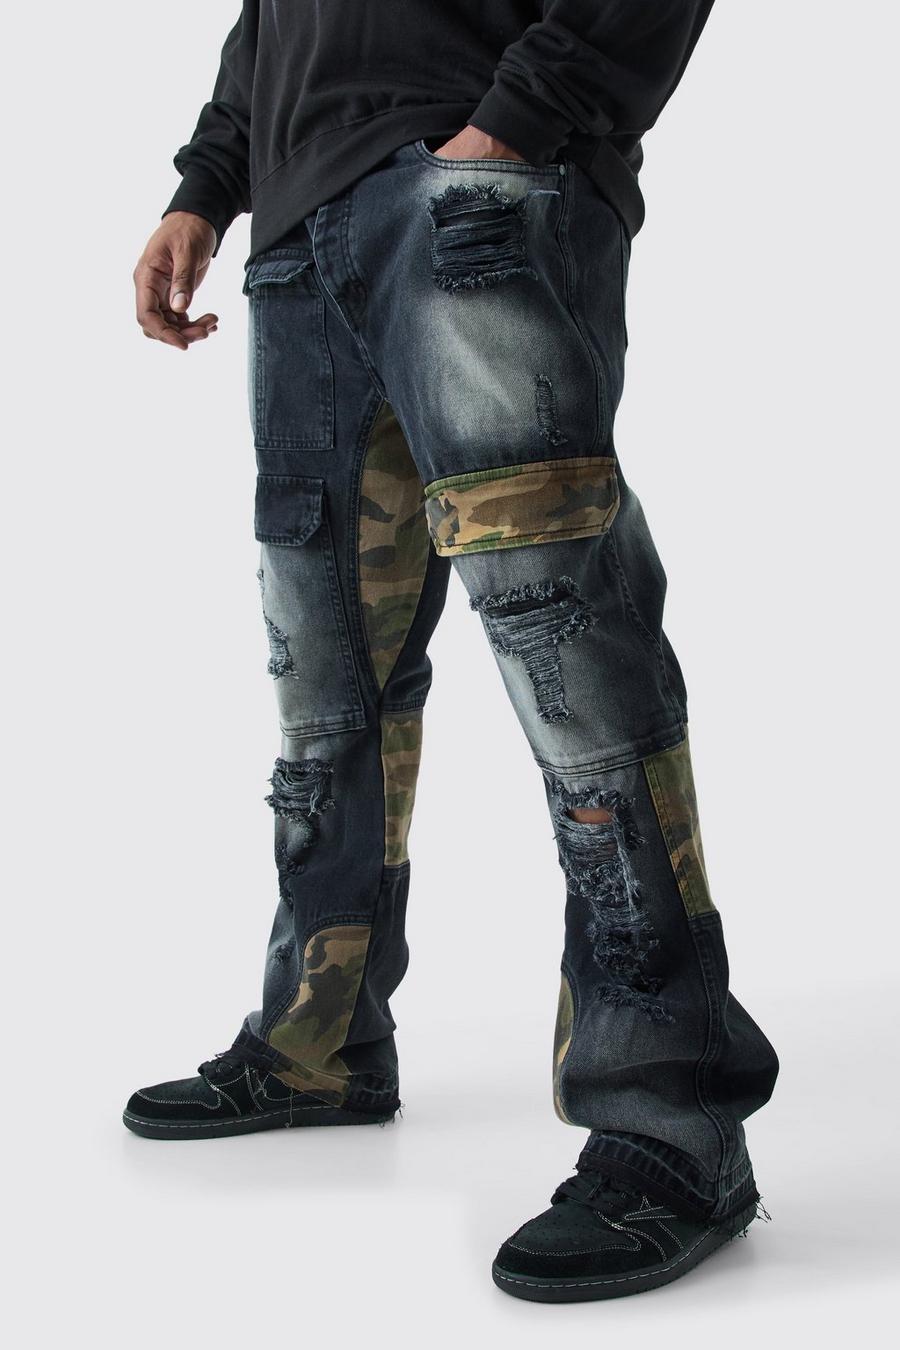 Jeans Cargo Plus Size Slim Fit in denim rigido in fantasia militare con rattoppi, Washed black